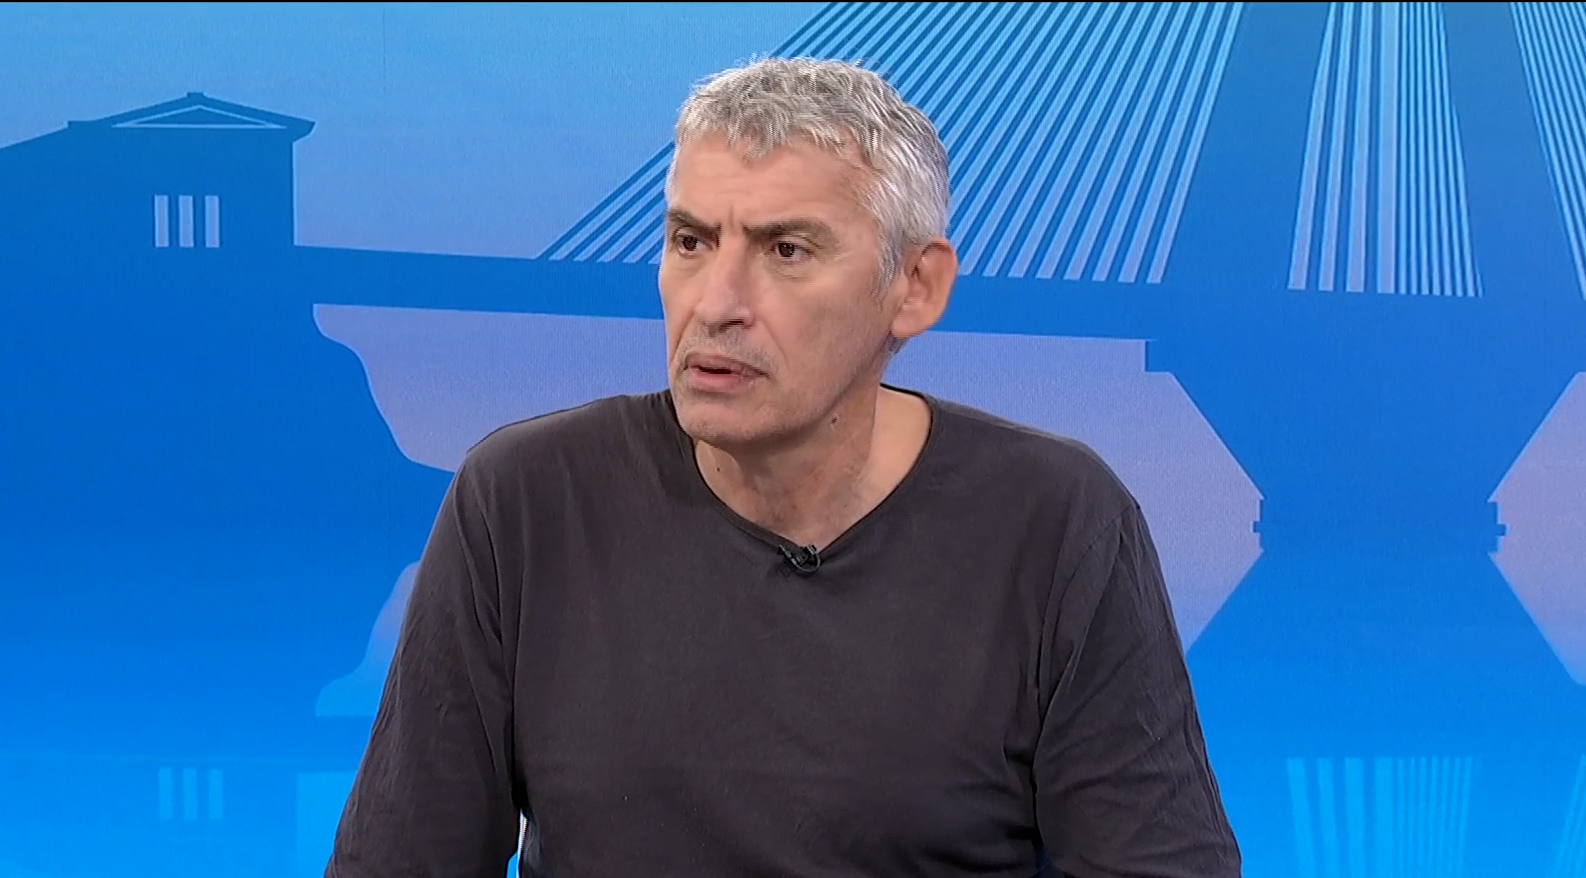 Φασούλας στην ΕΡΤ για την πορεία της Εθνικής στο Eurobasket: «Τα έβαλε όλα αλλά δυστυχώς δεν λειτουργούσε αμυντικά» (video)